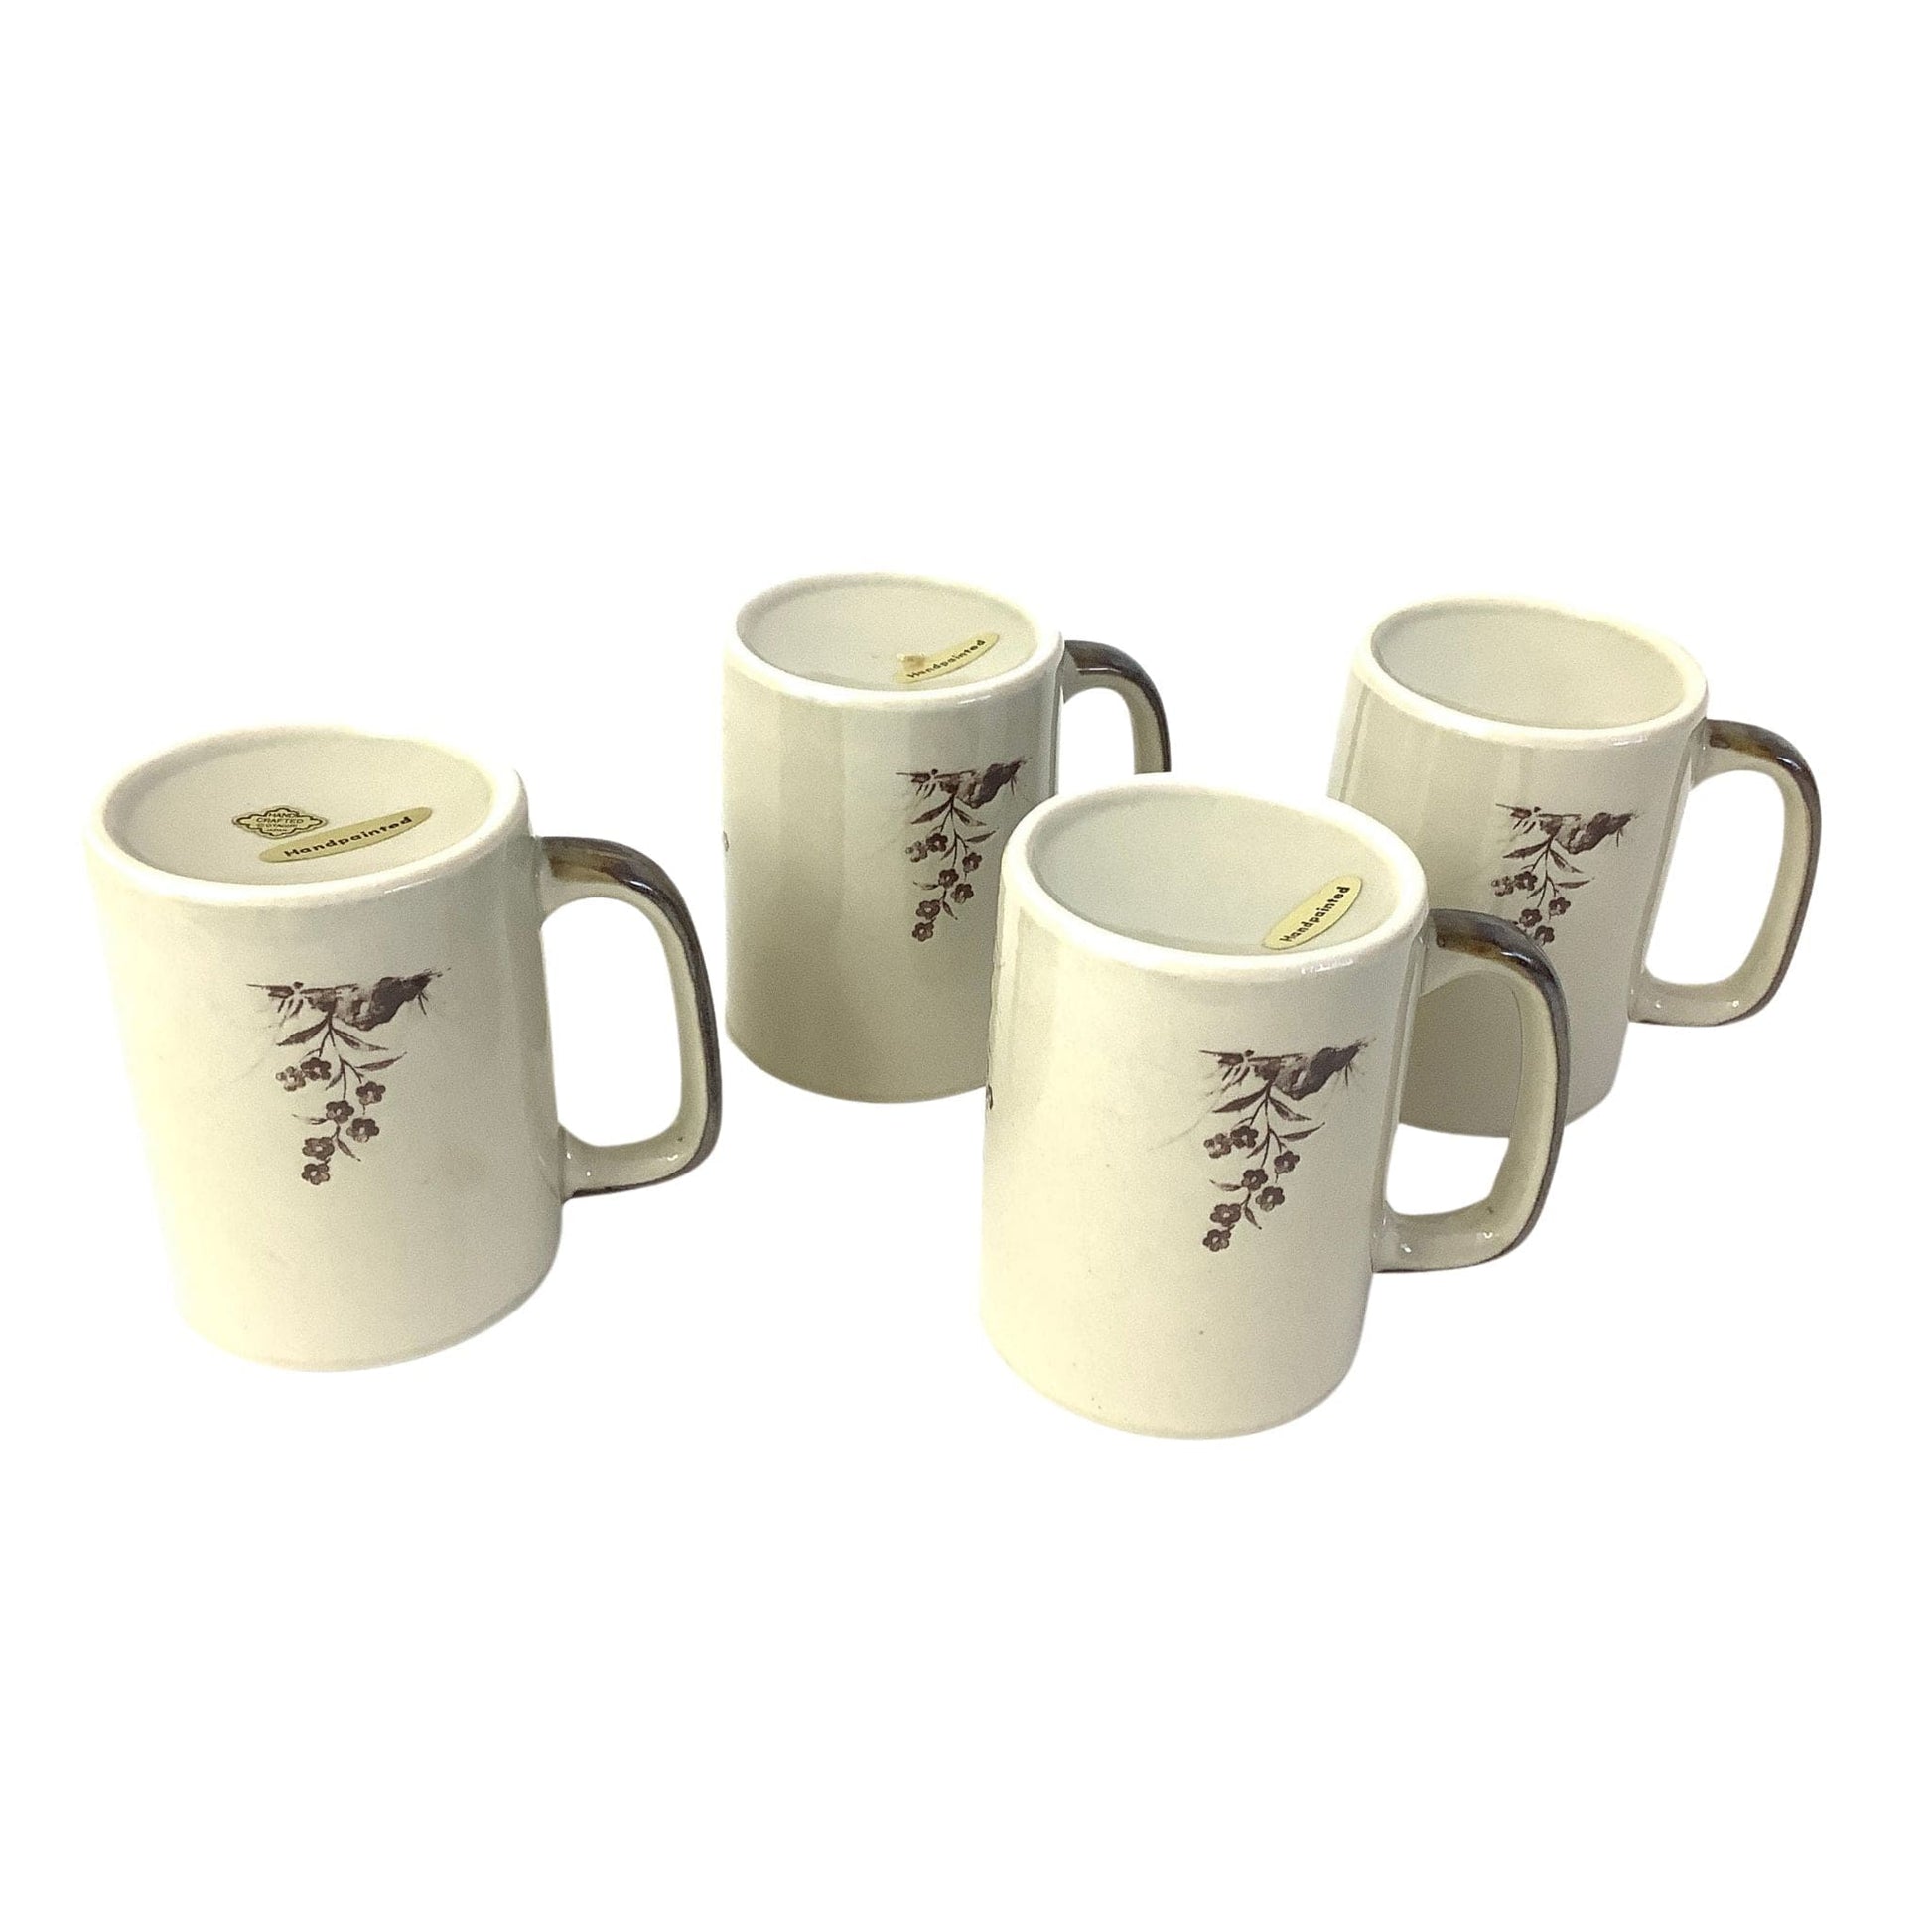 Otagiri Coffee Mugs Multi / Pottery / Vintage 1950s